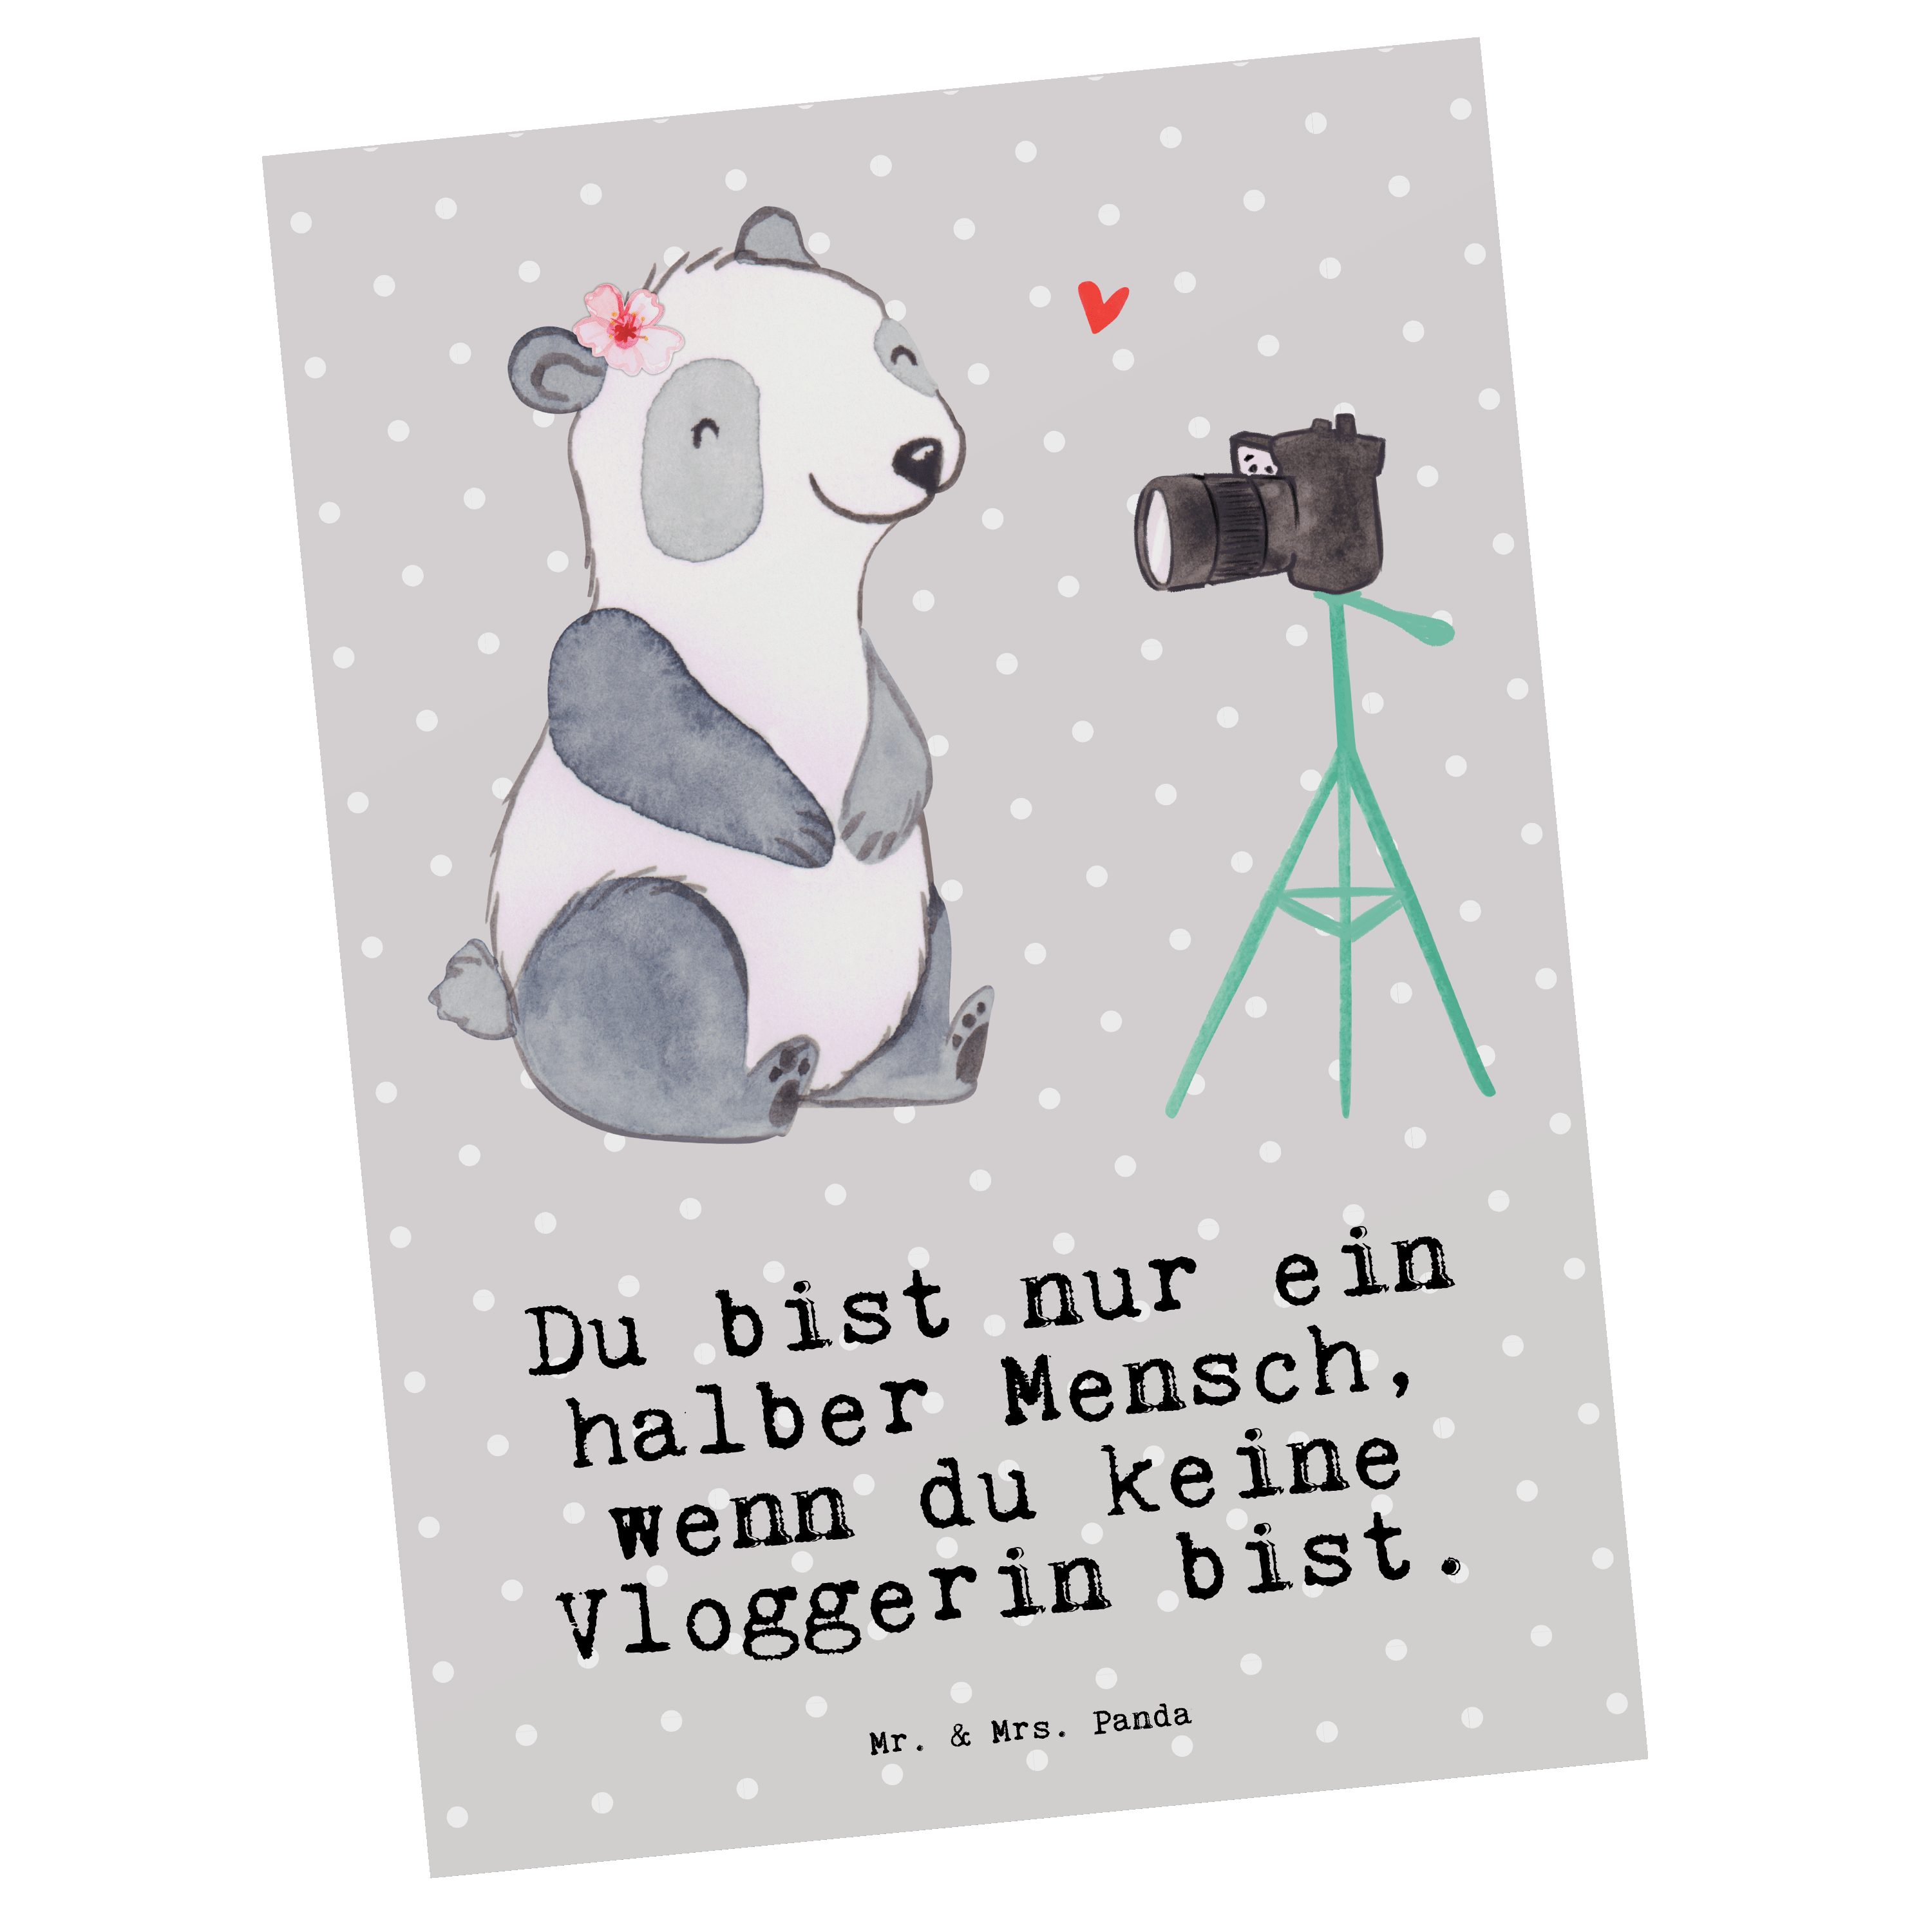 Mr. & Mrs. Panda Postkarte Vloggerin mit Herz - Grau Pastell - Geschenk, Abschied, Einladung, Sc